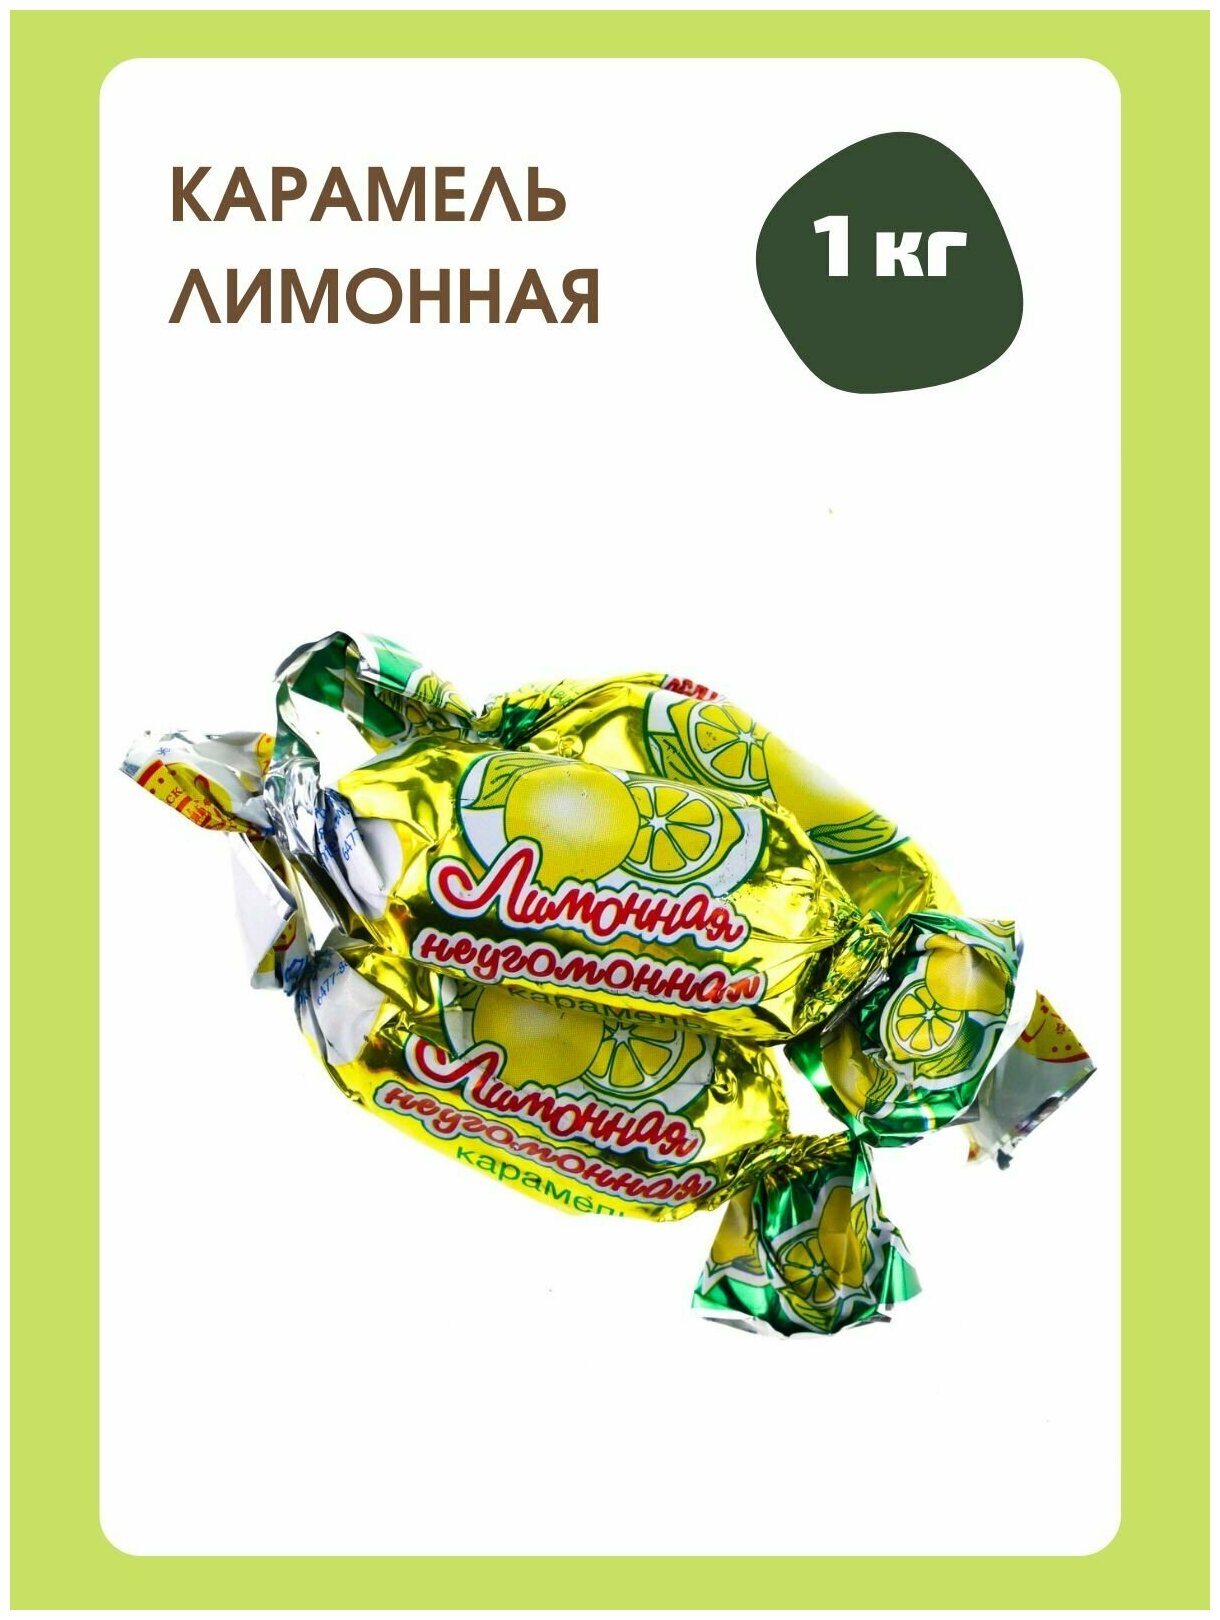 Конфеты Карамель лимонная-неугомонная, 1 кг